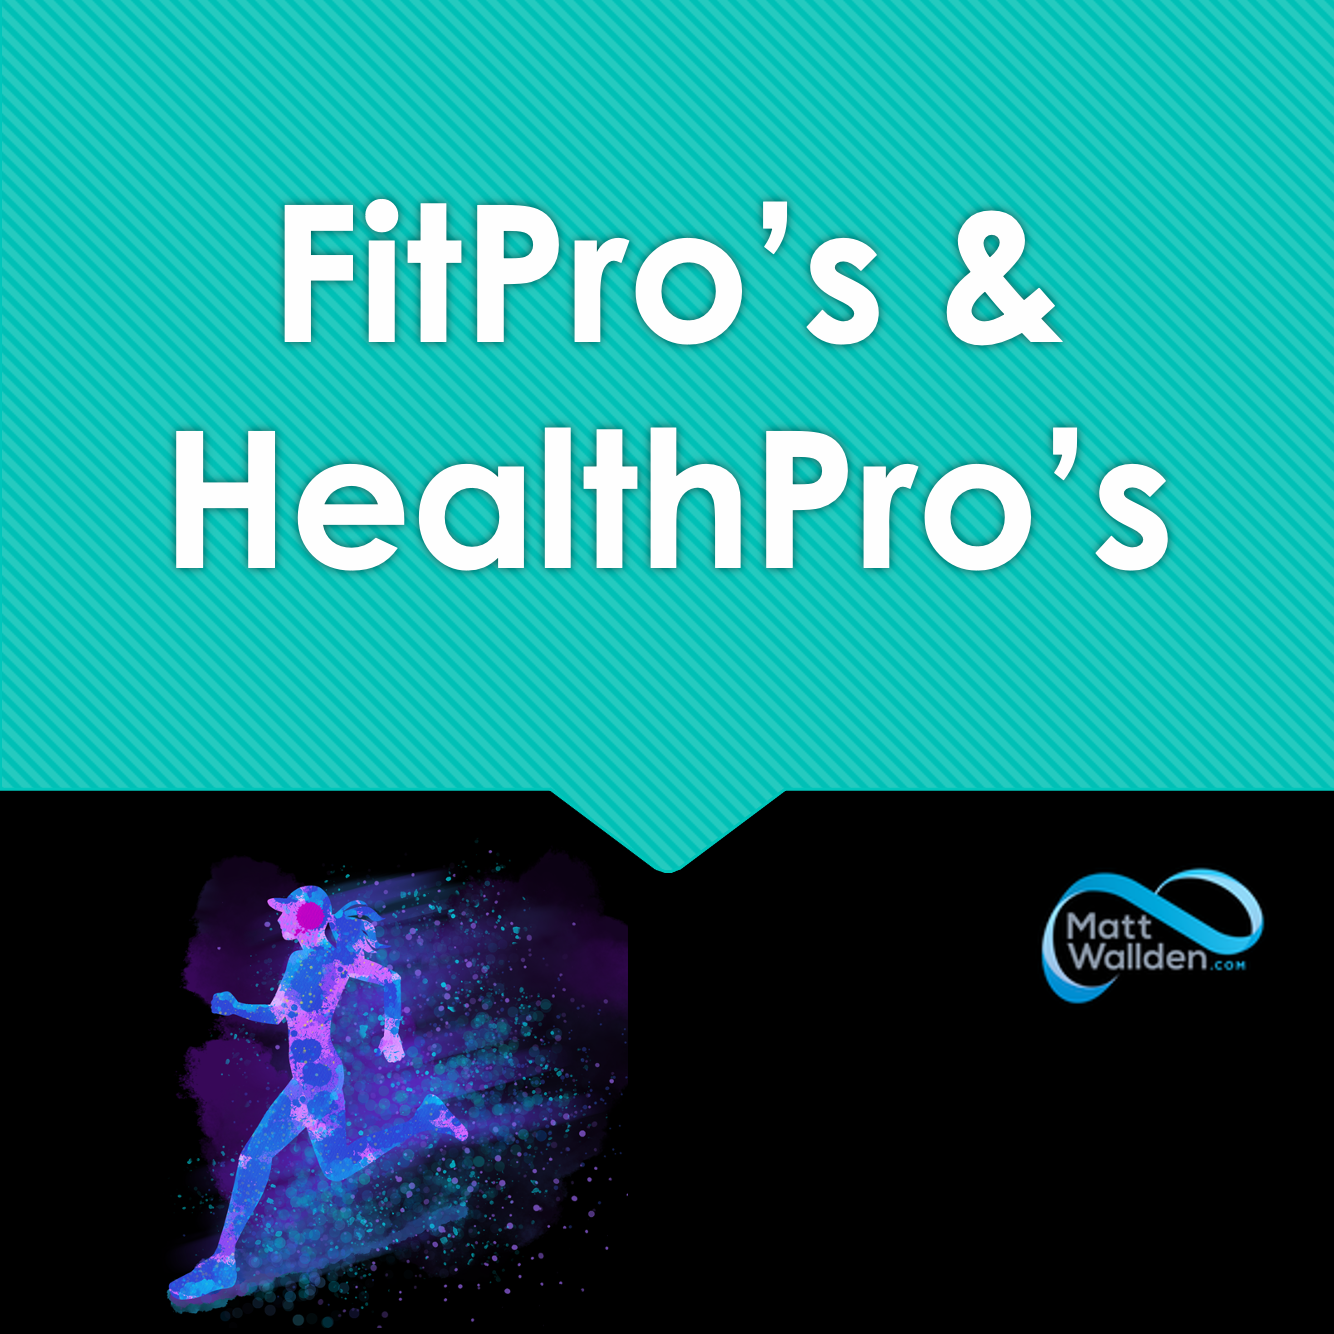 HealthPro's & FitPro's